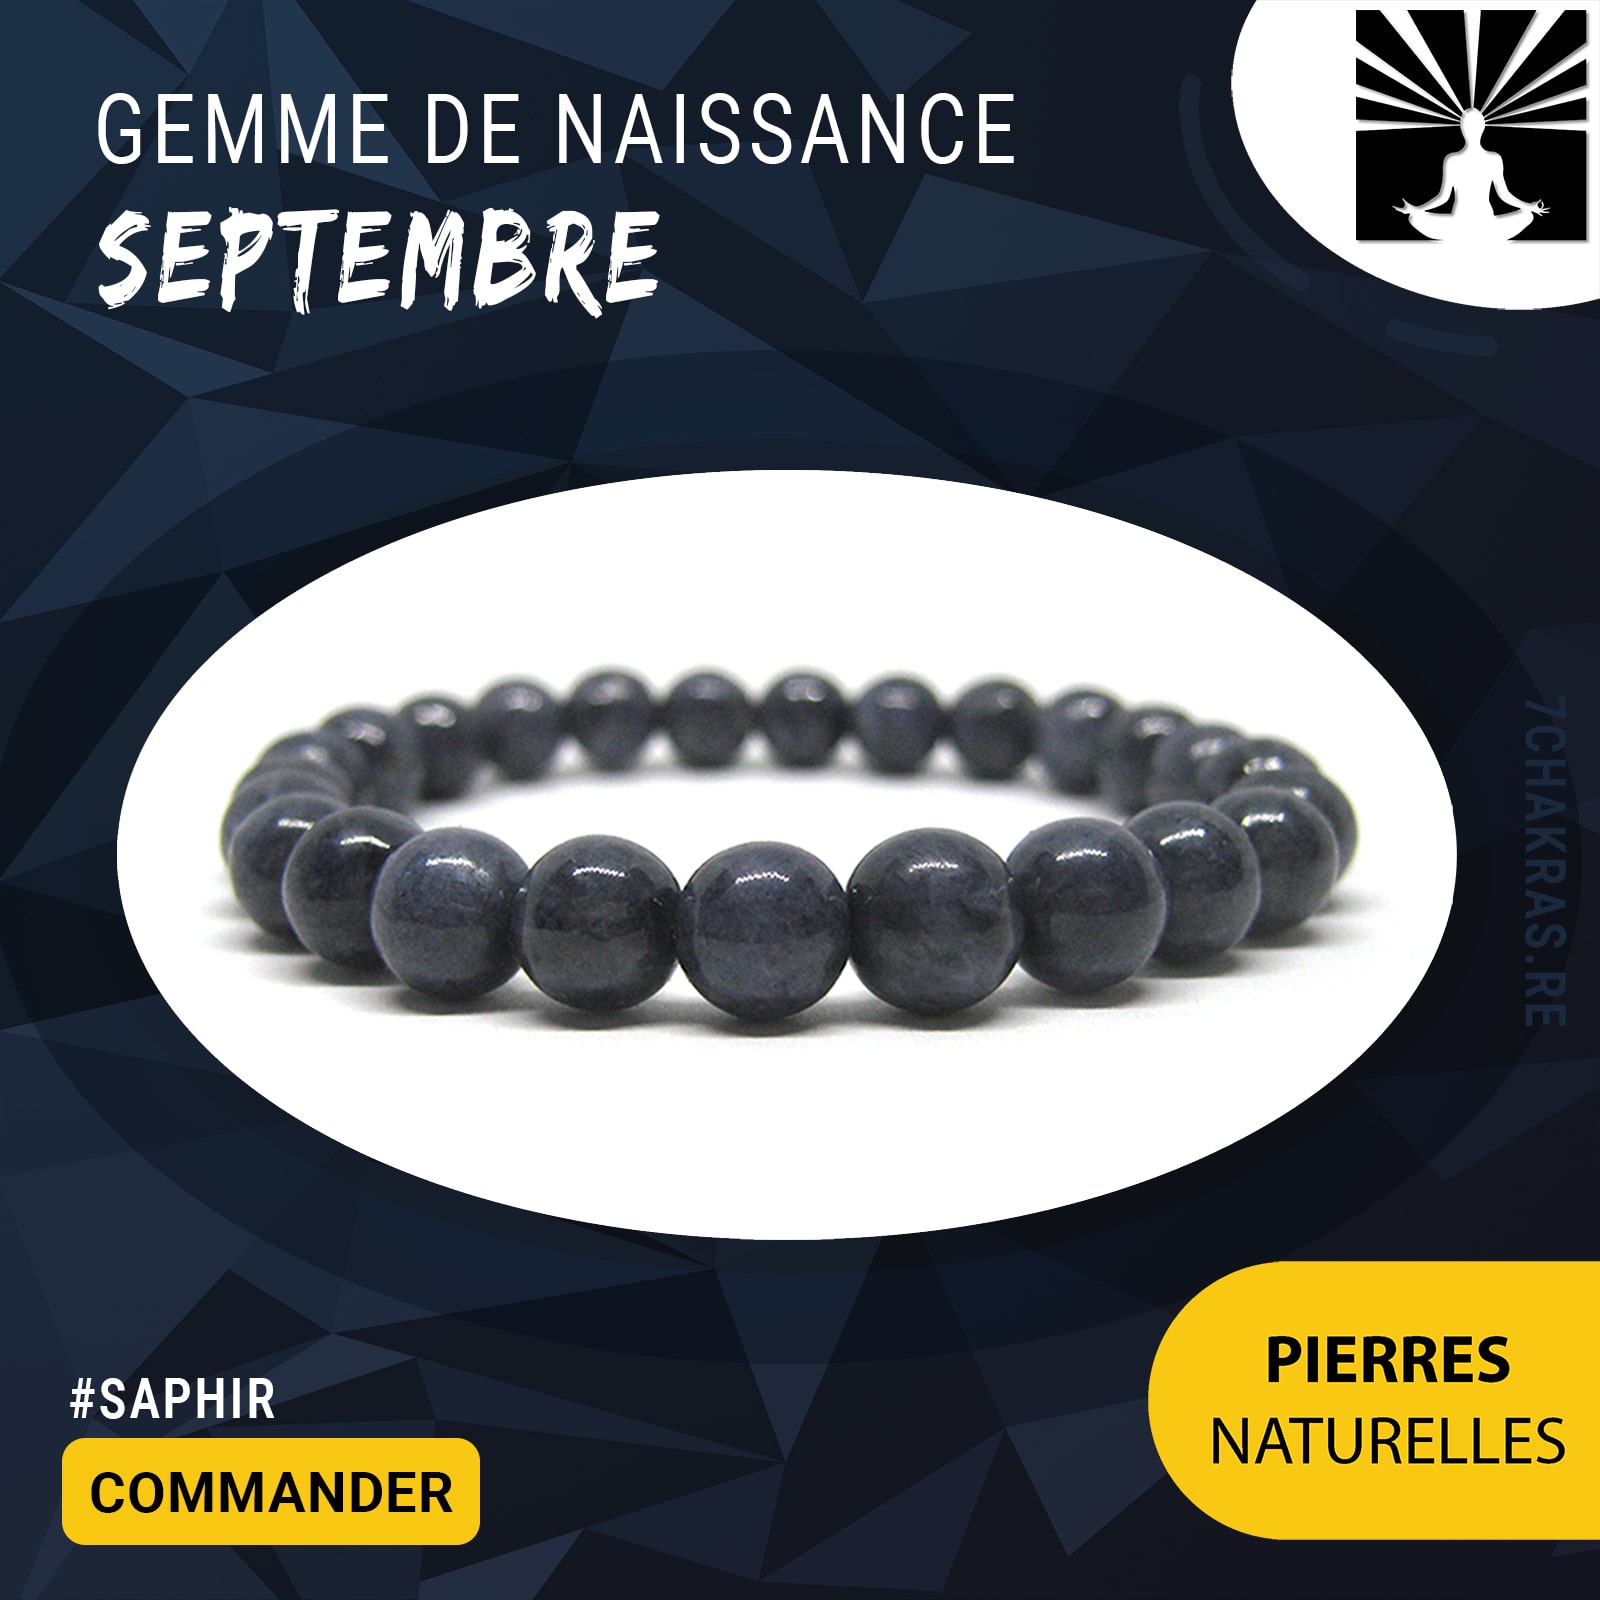 Bracelet Pierre de Naissance -Juillet- Rubis - Tous les Bracelets